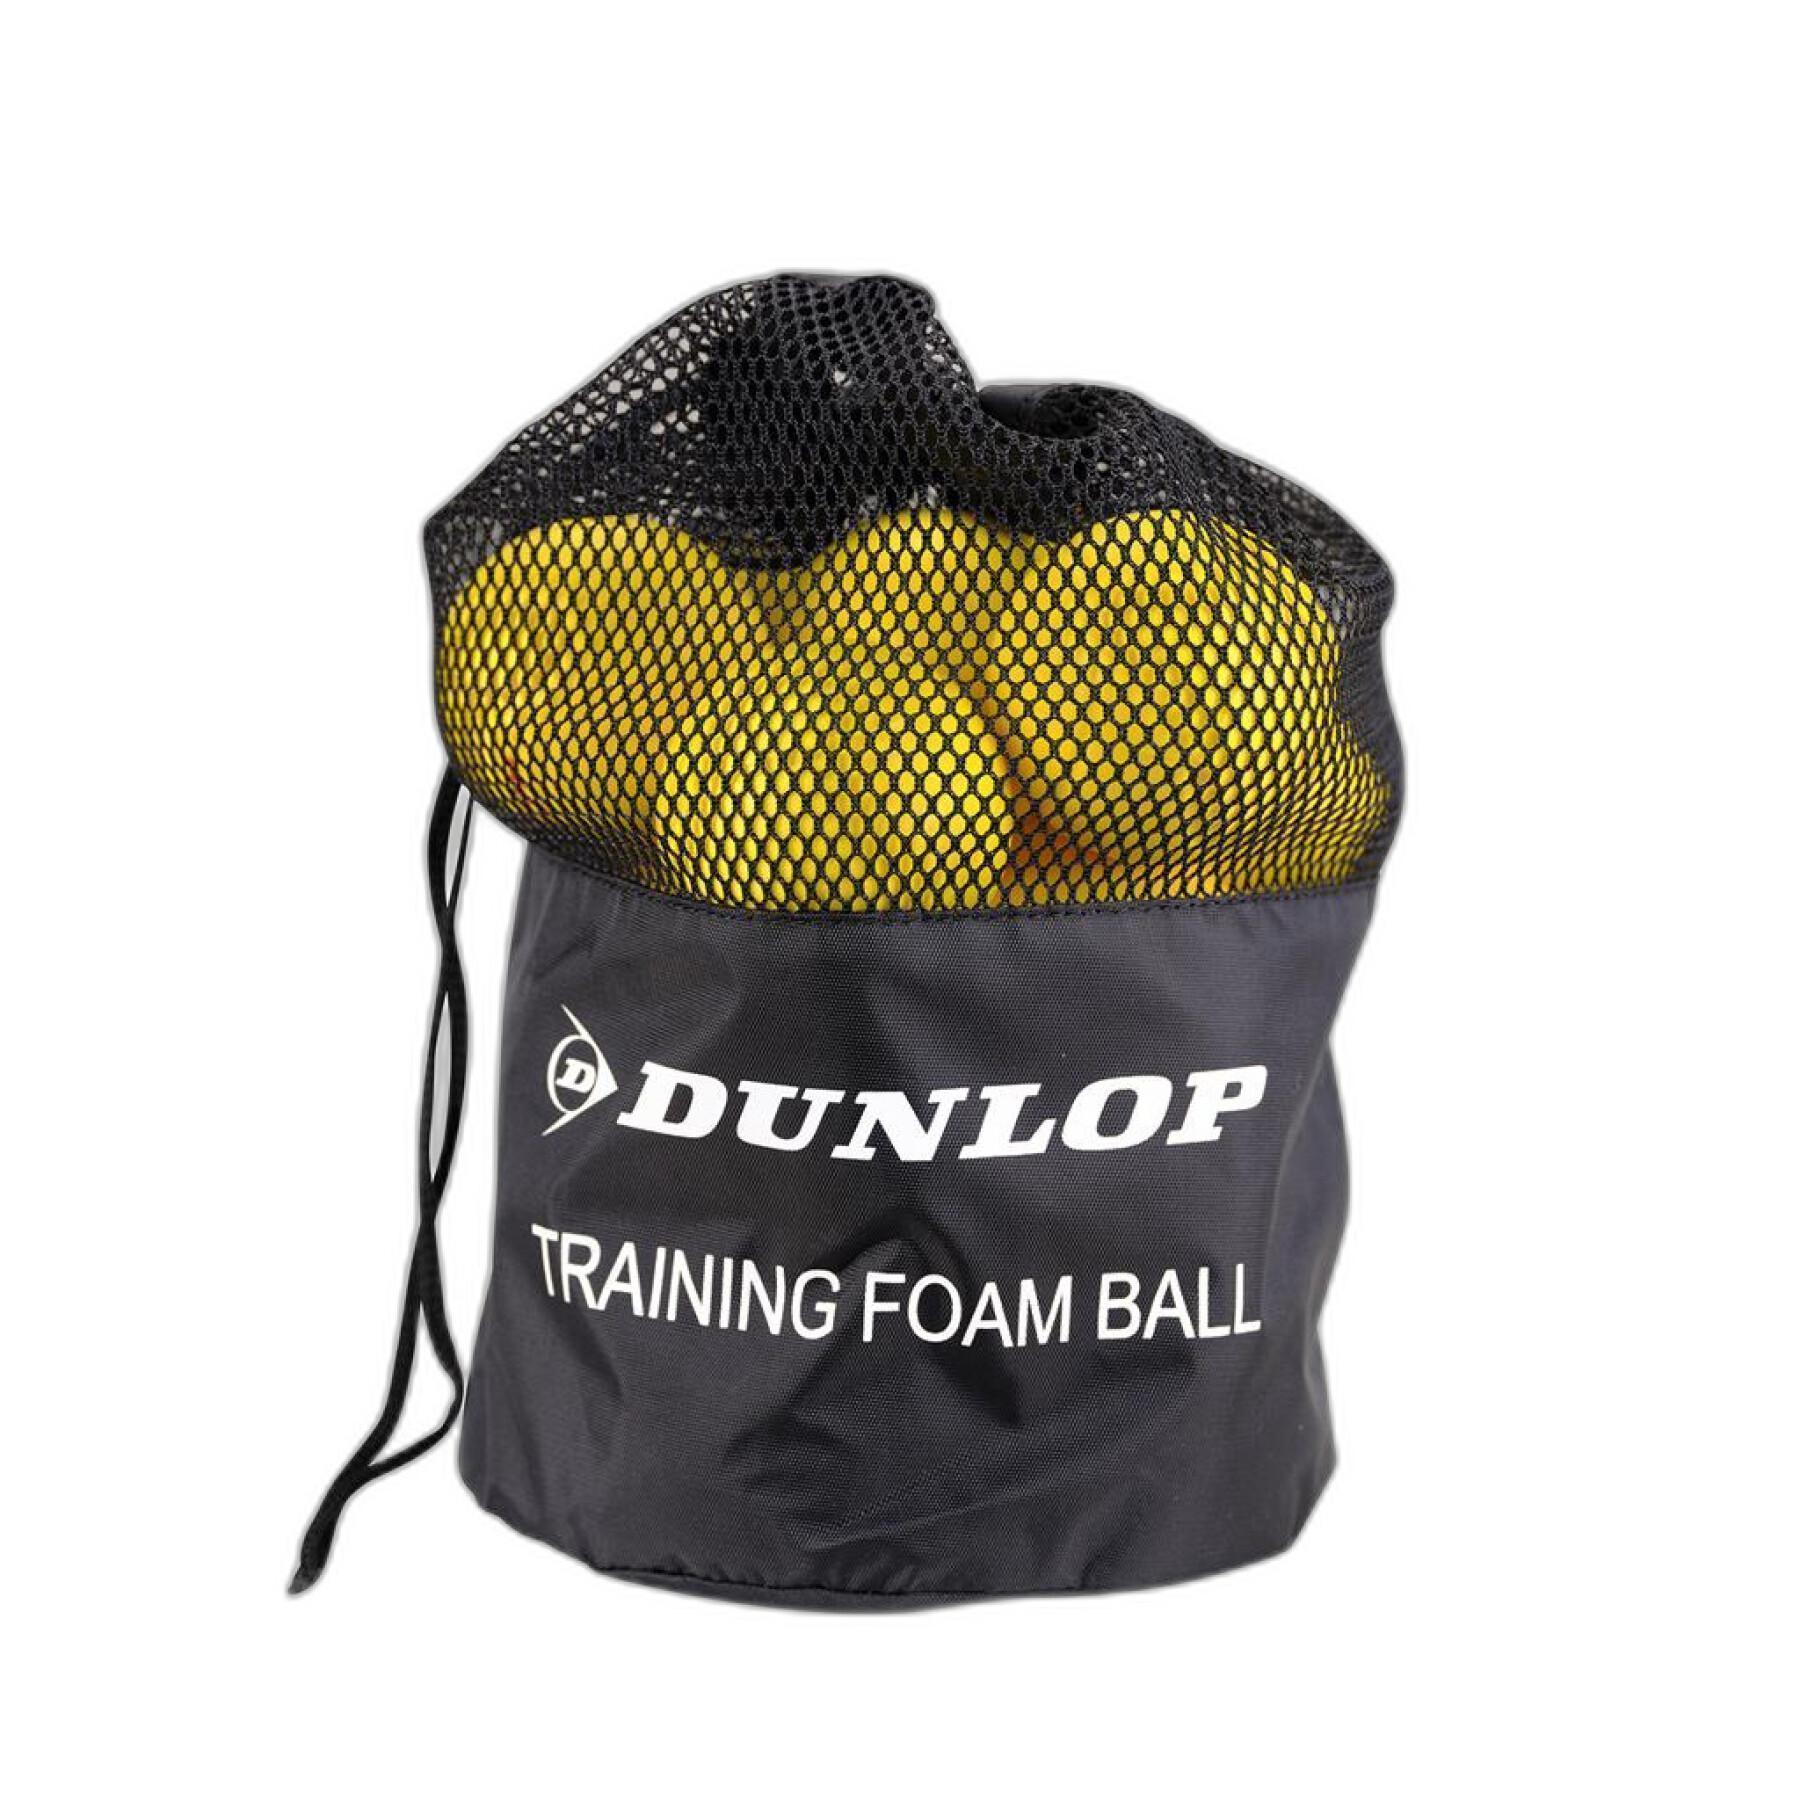 Lot of 12 tennis balls Dunlop Training Foam